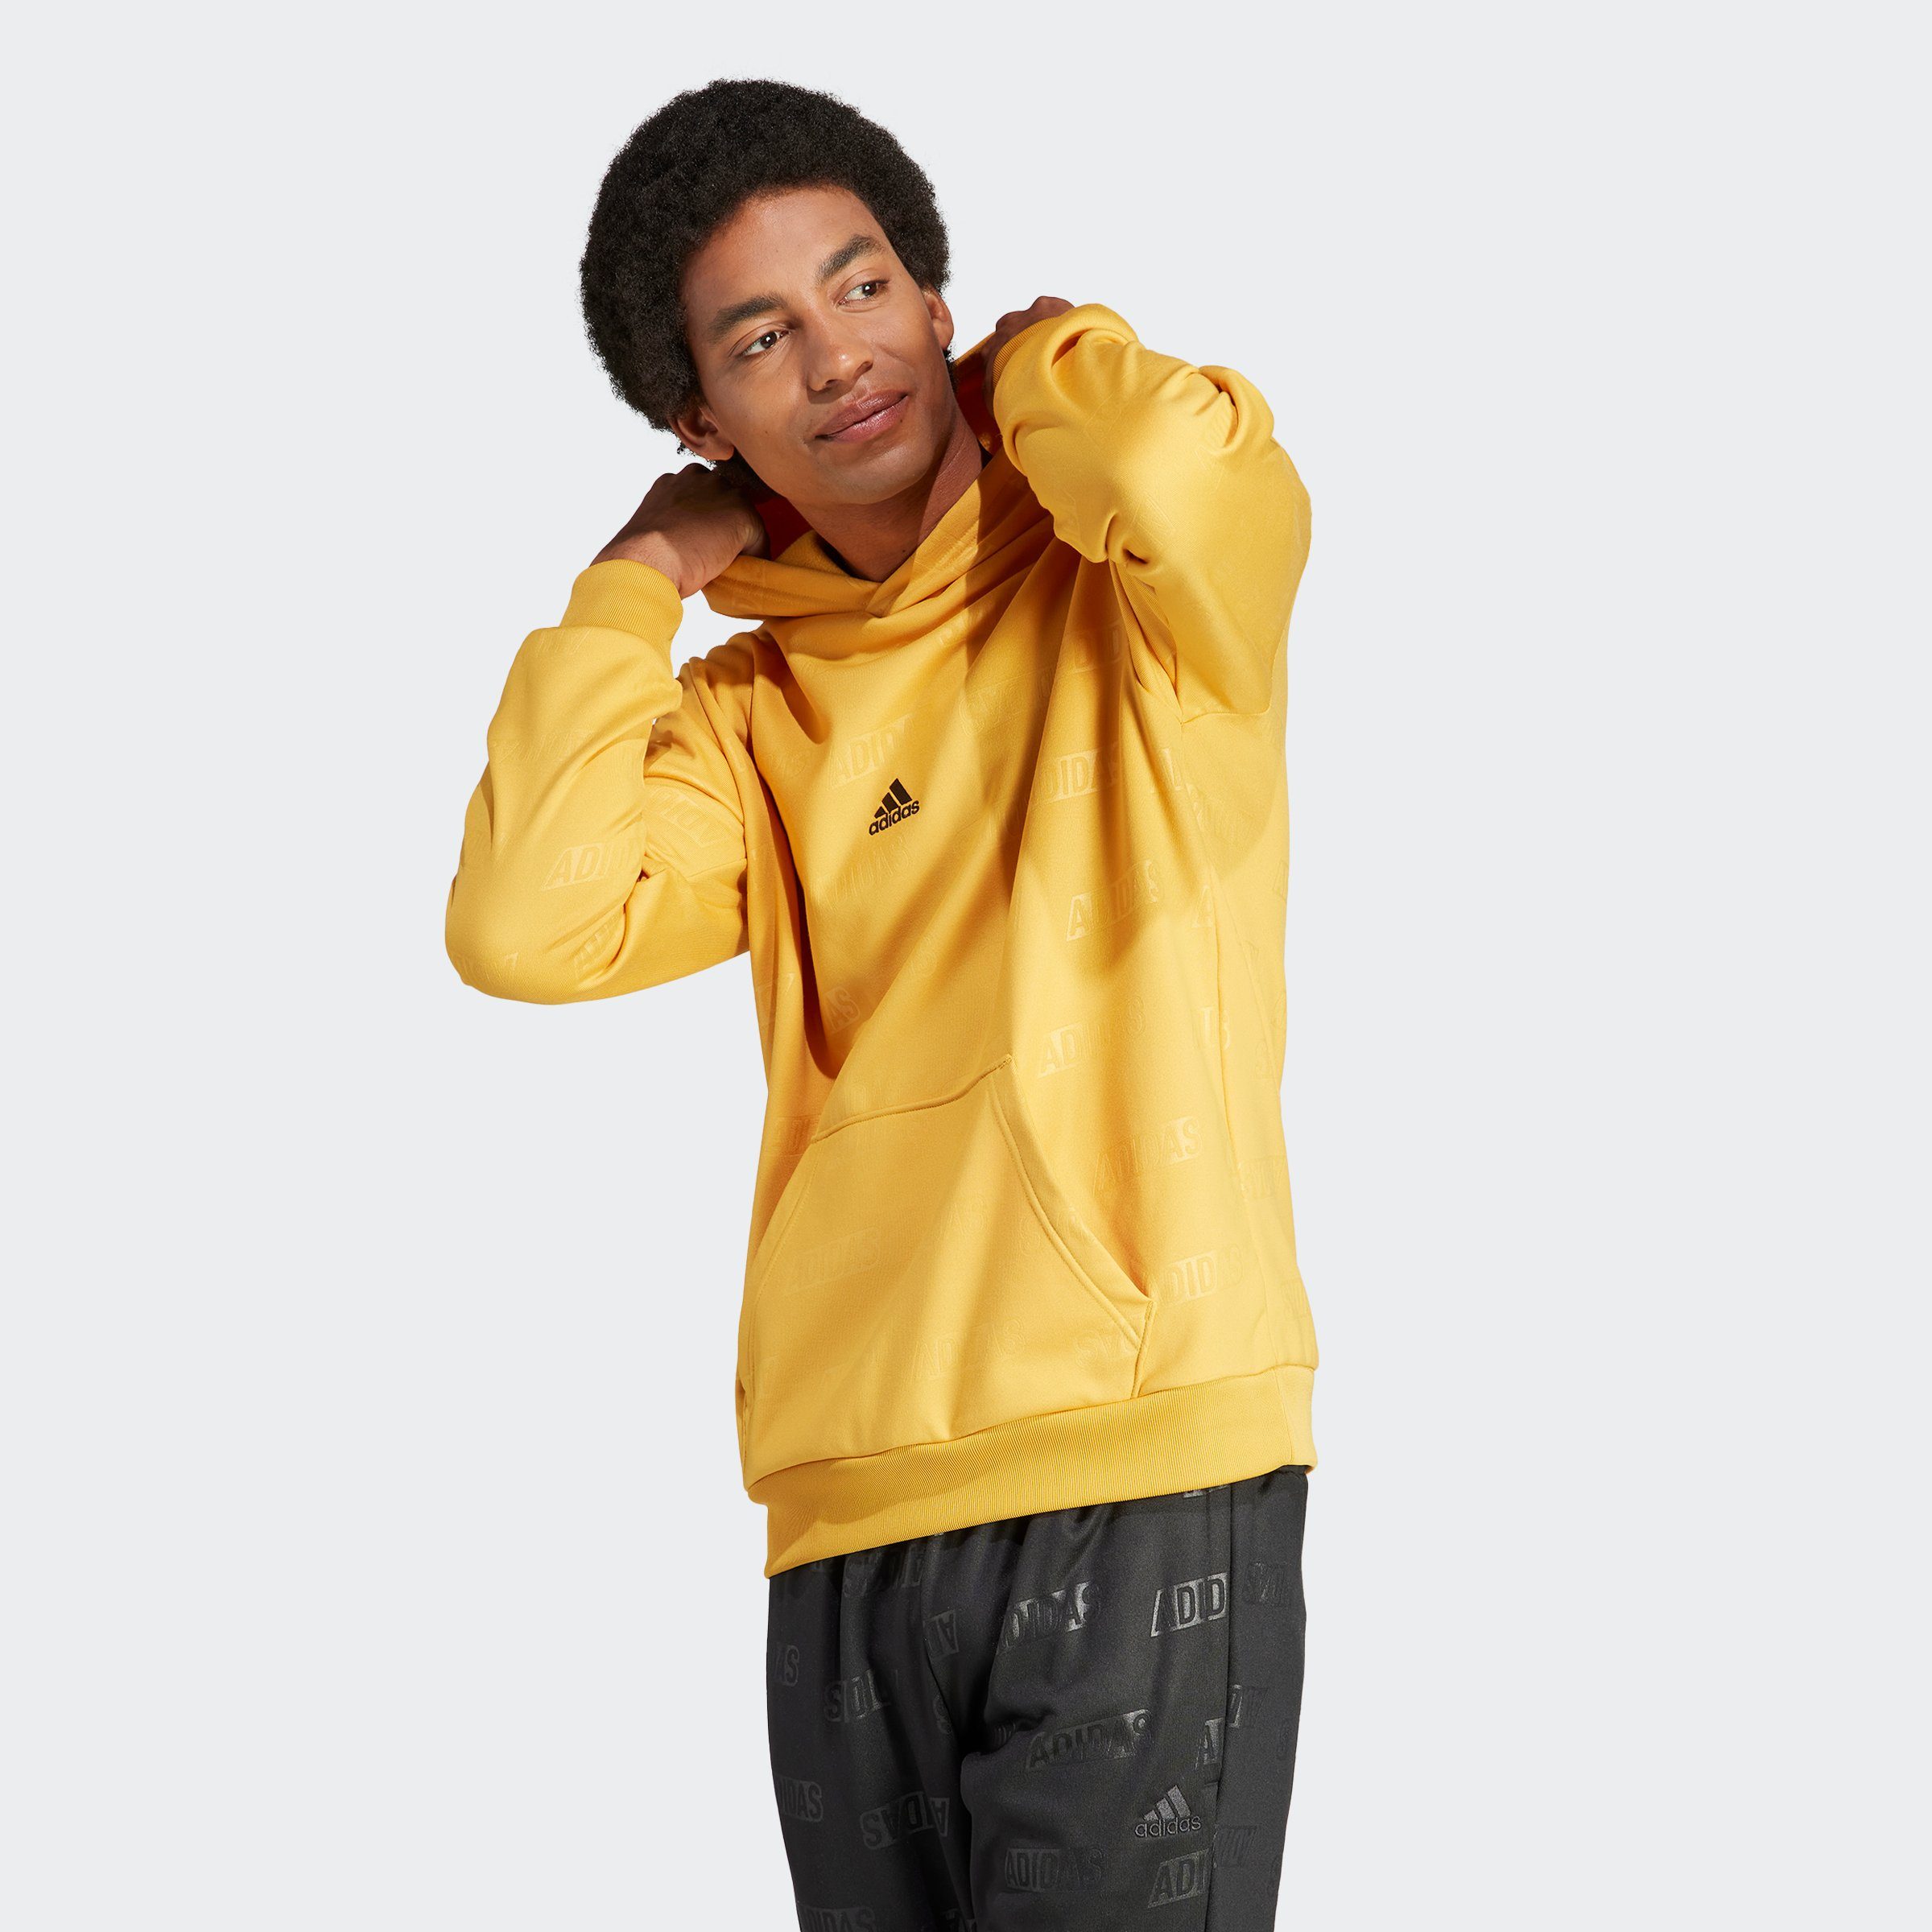 Sweatshirt HD BL PREYEL Sportswear adidas Q4